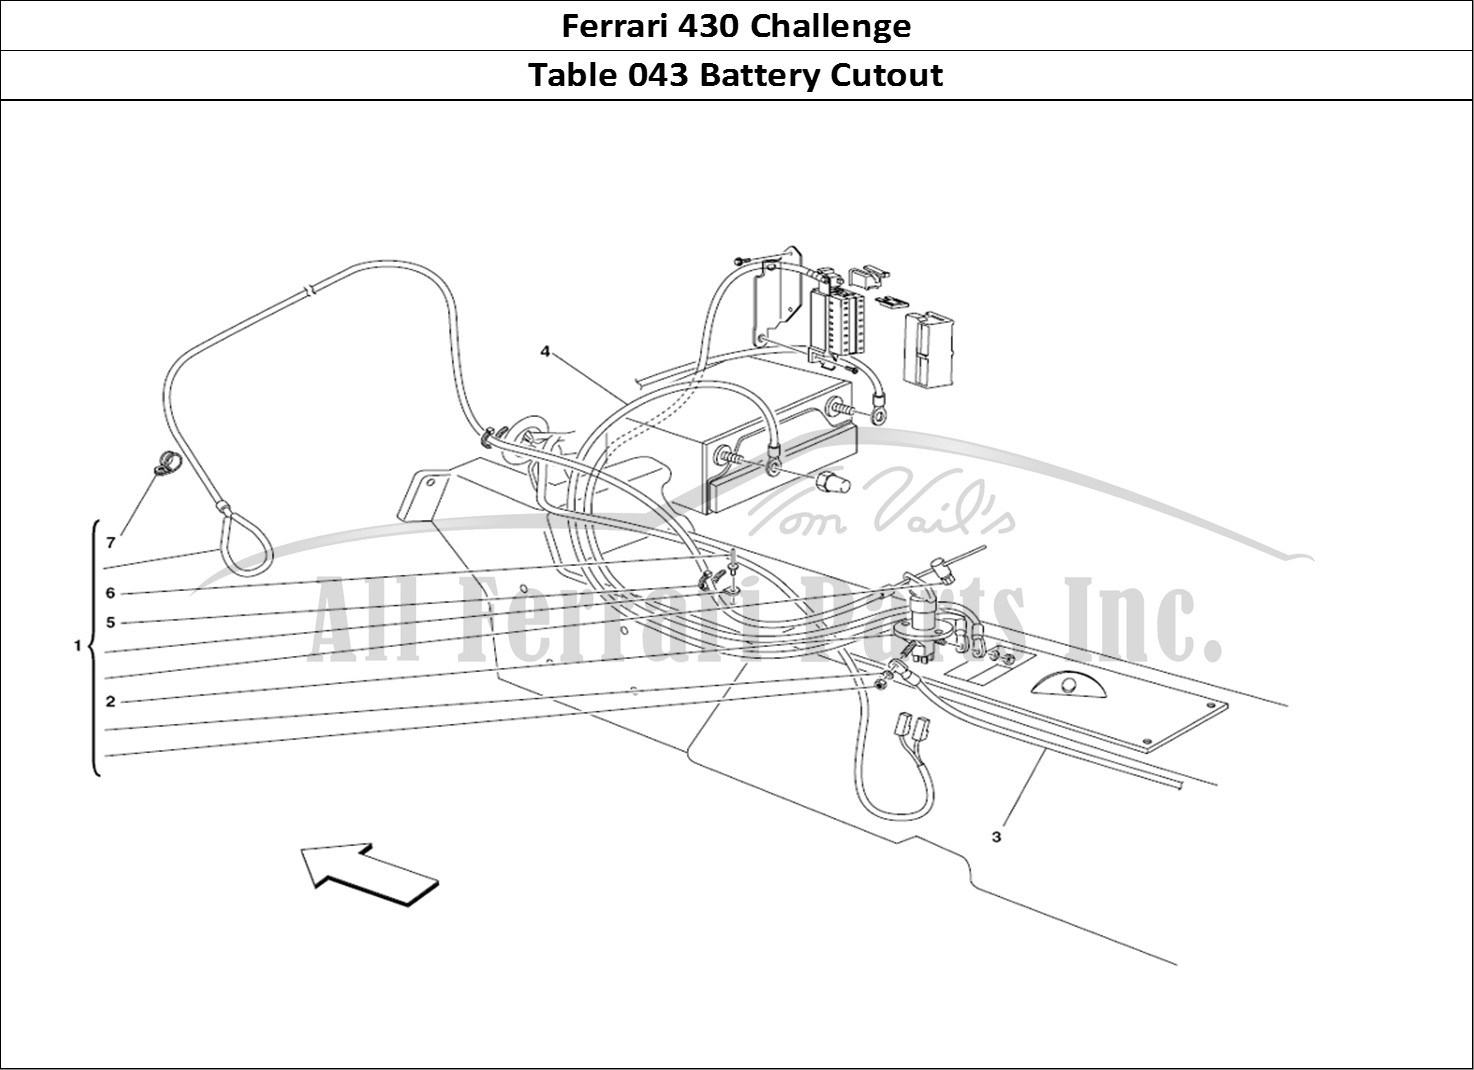 Ferrari Parts Ferrari 430 Challenge (2006) Page 043 Battery Cut-out